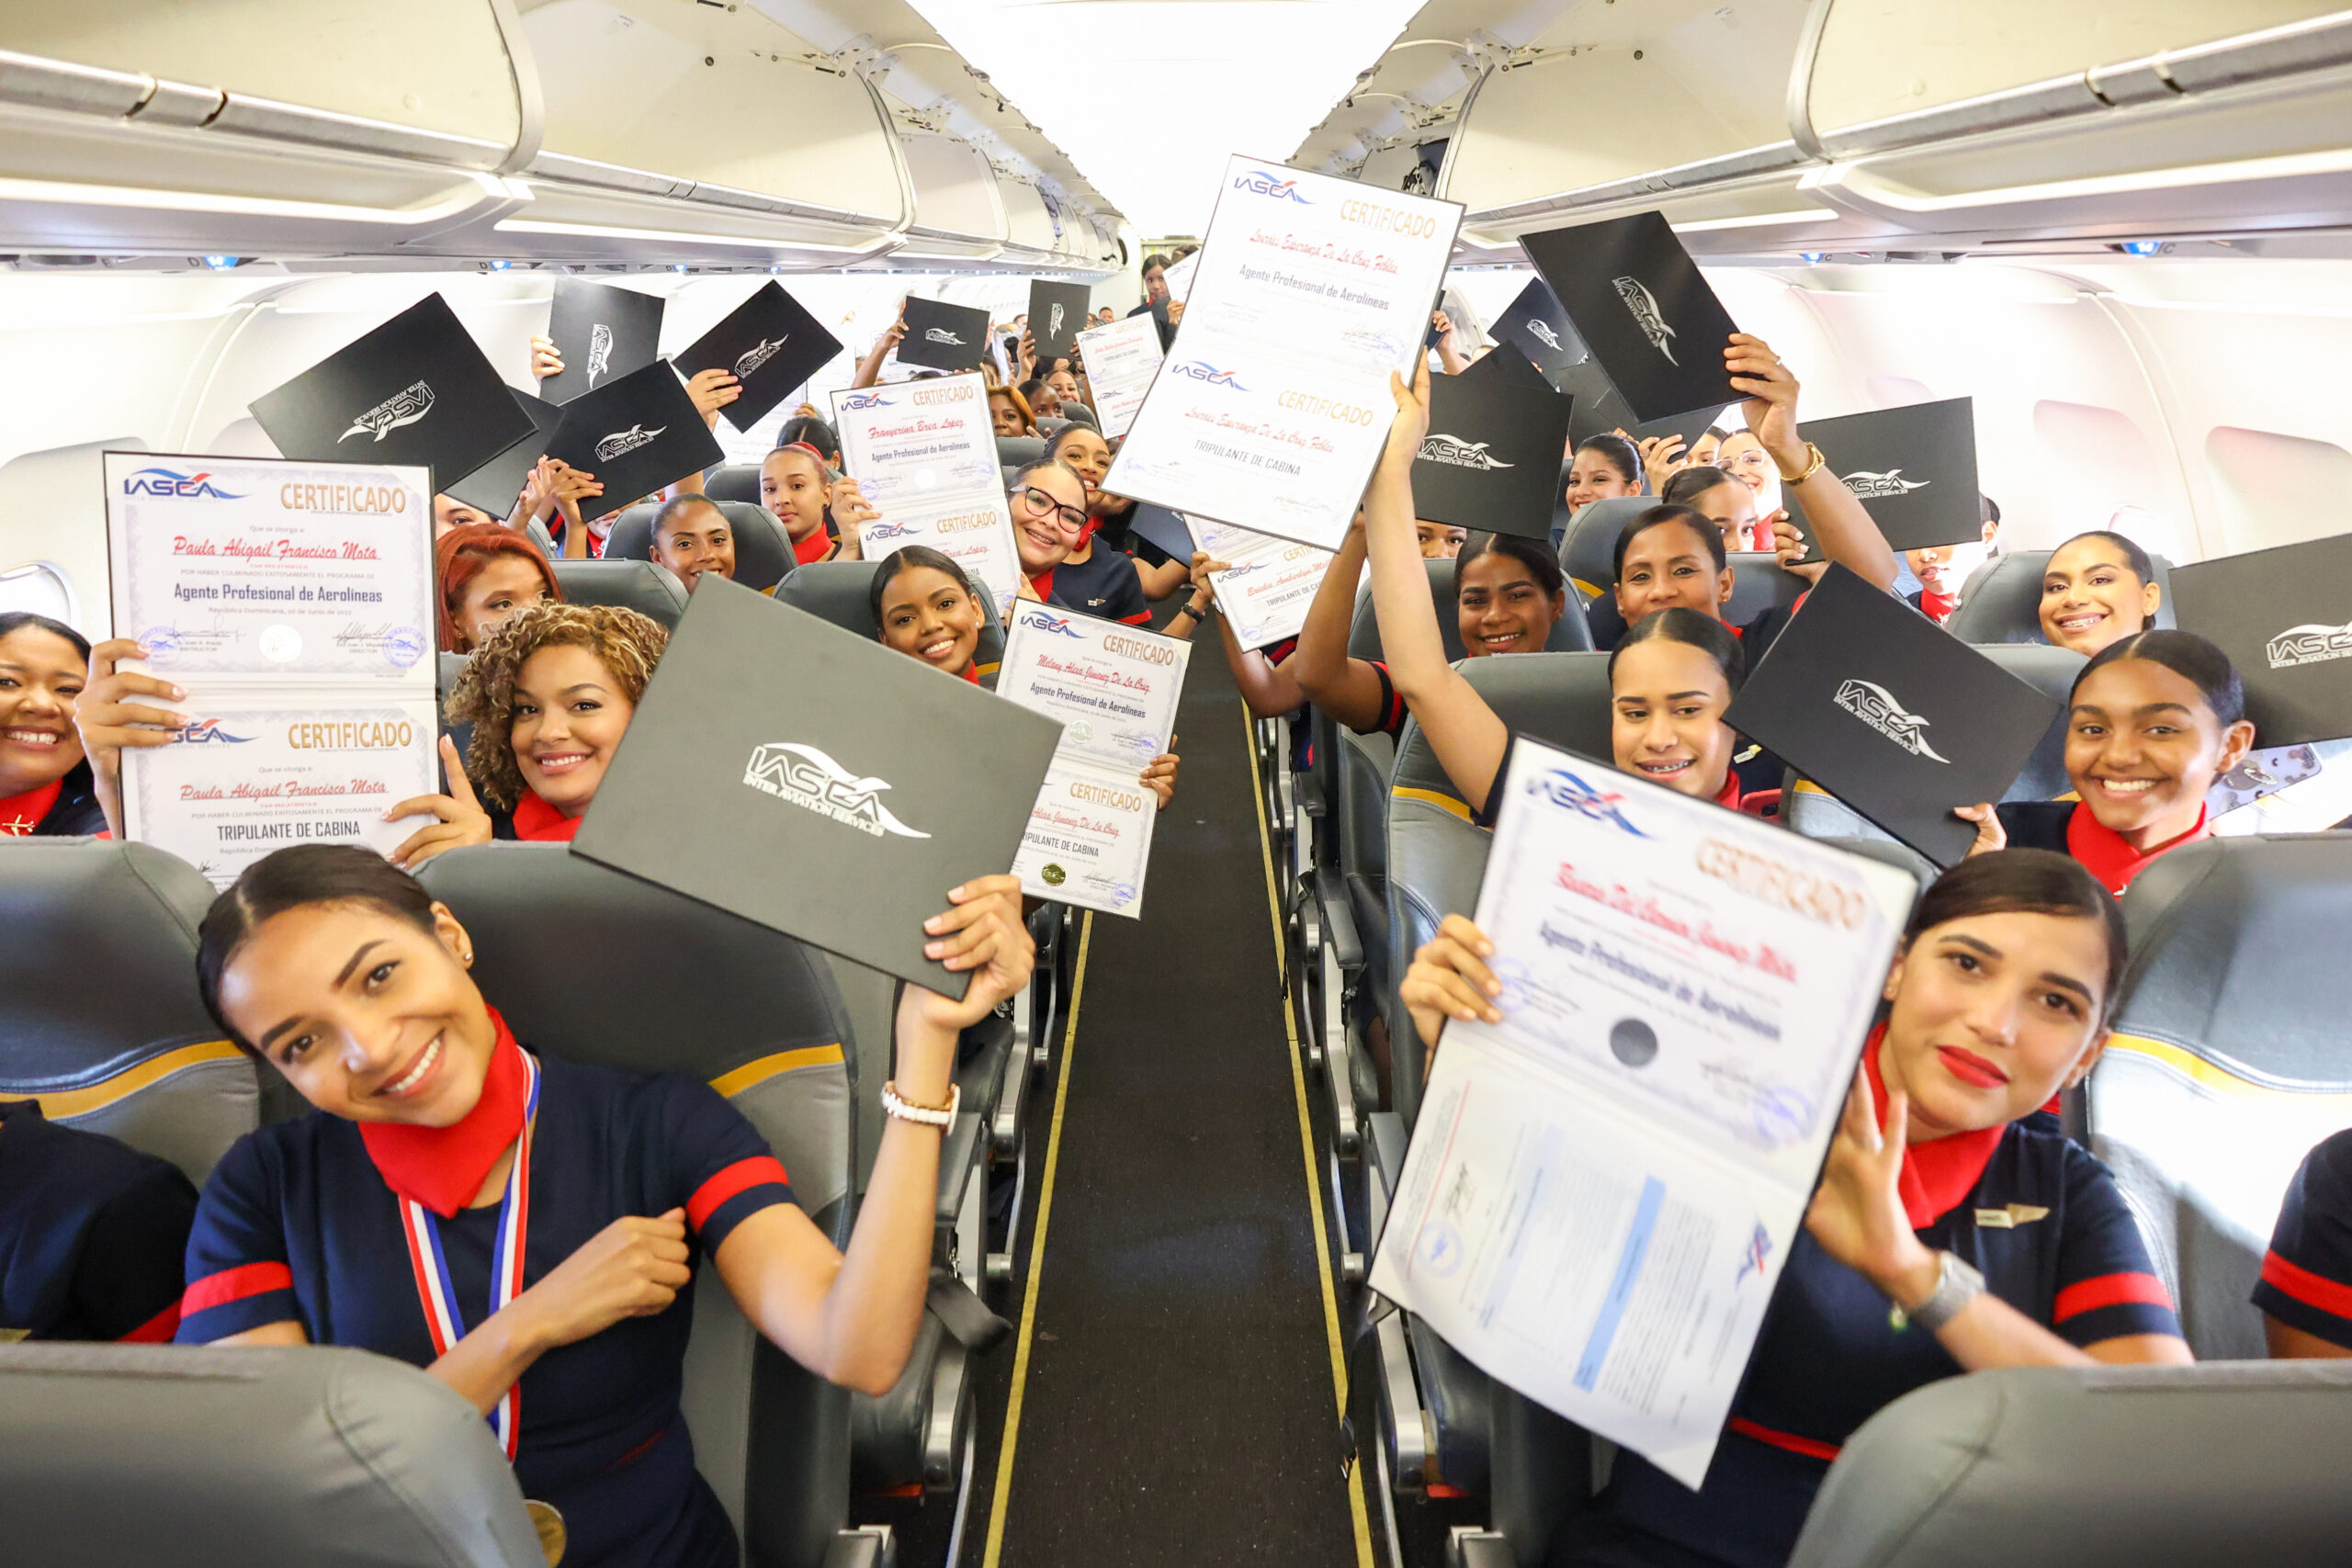 Escuela Inter Aviation Services gradúa 100 estudiantes dominicanos en pleno vuelo